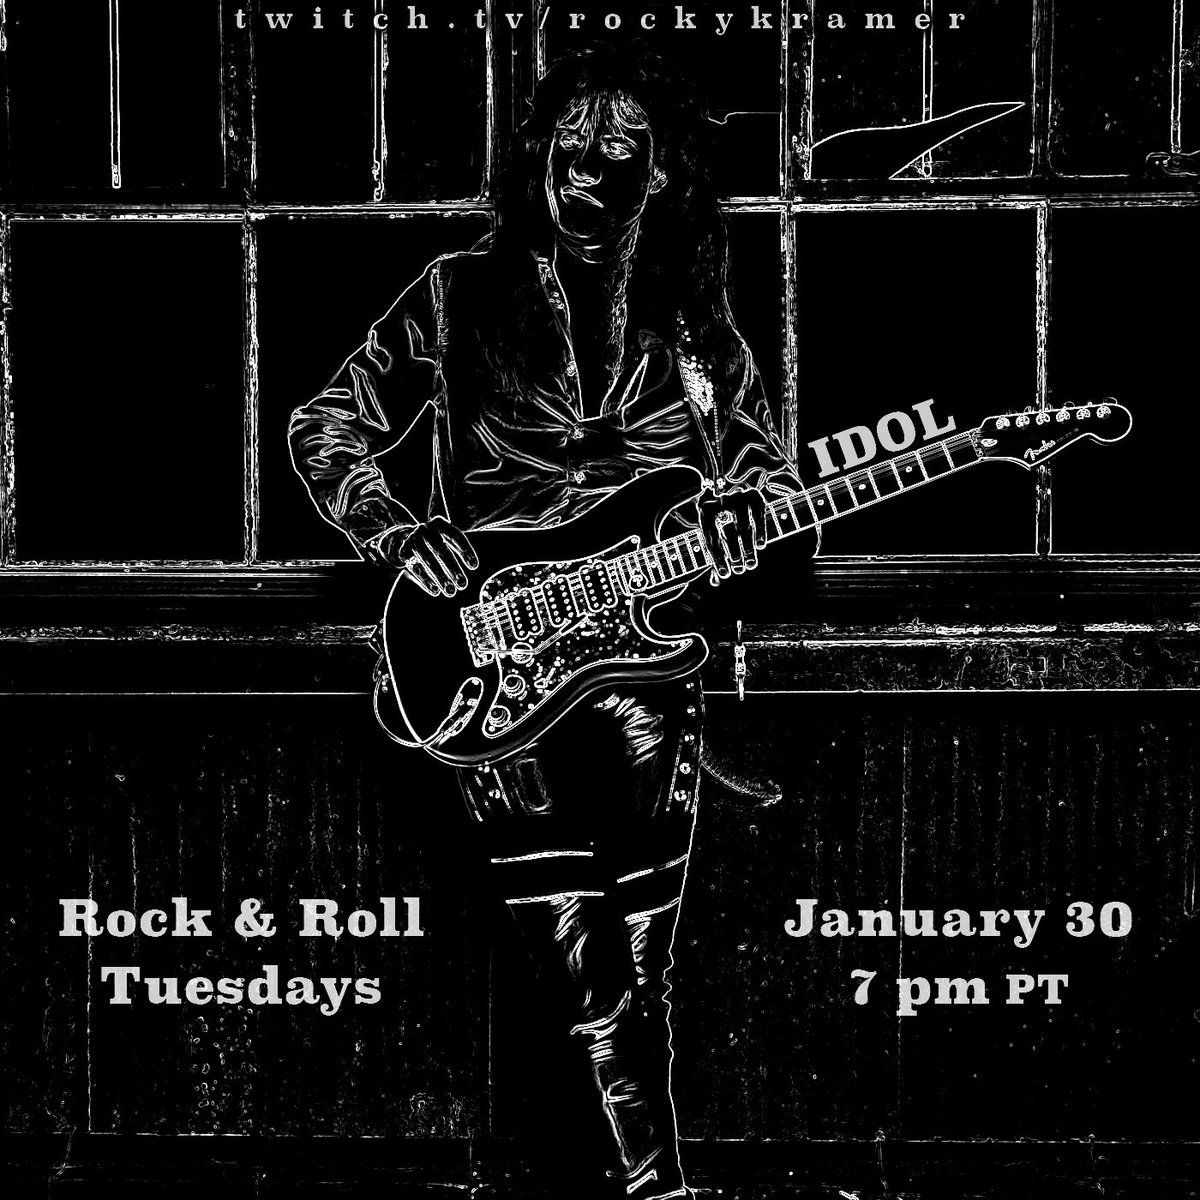 Rock & Roll Tuesdays: Idol January 30, 7 PM PT Twitch.tv/rockykramer #Guitarist #RockNroll